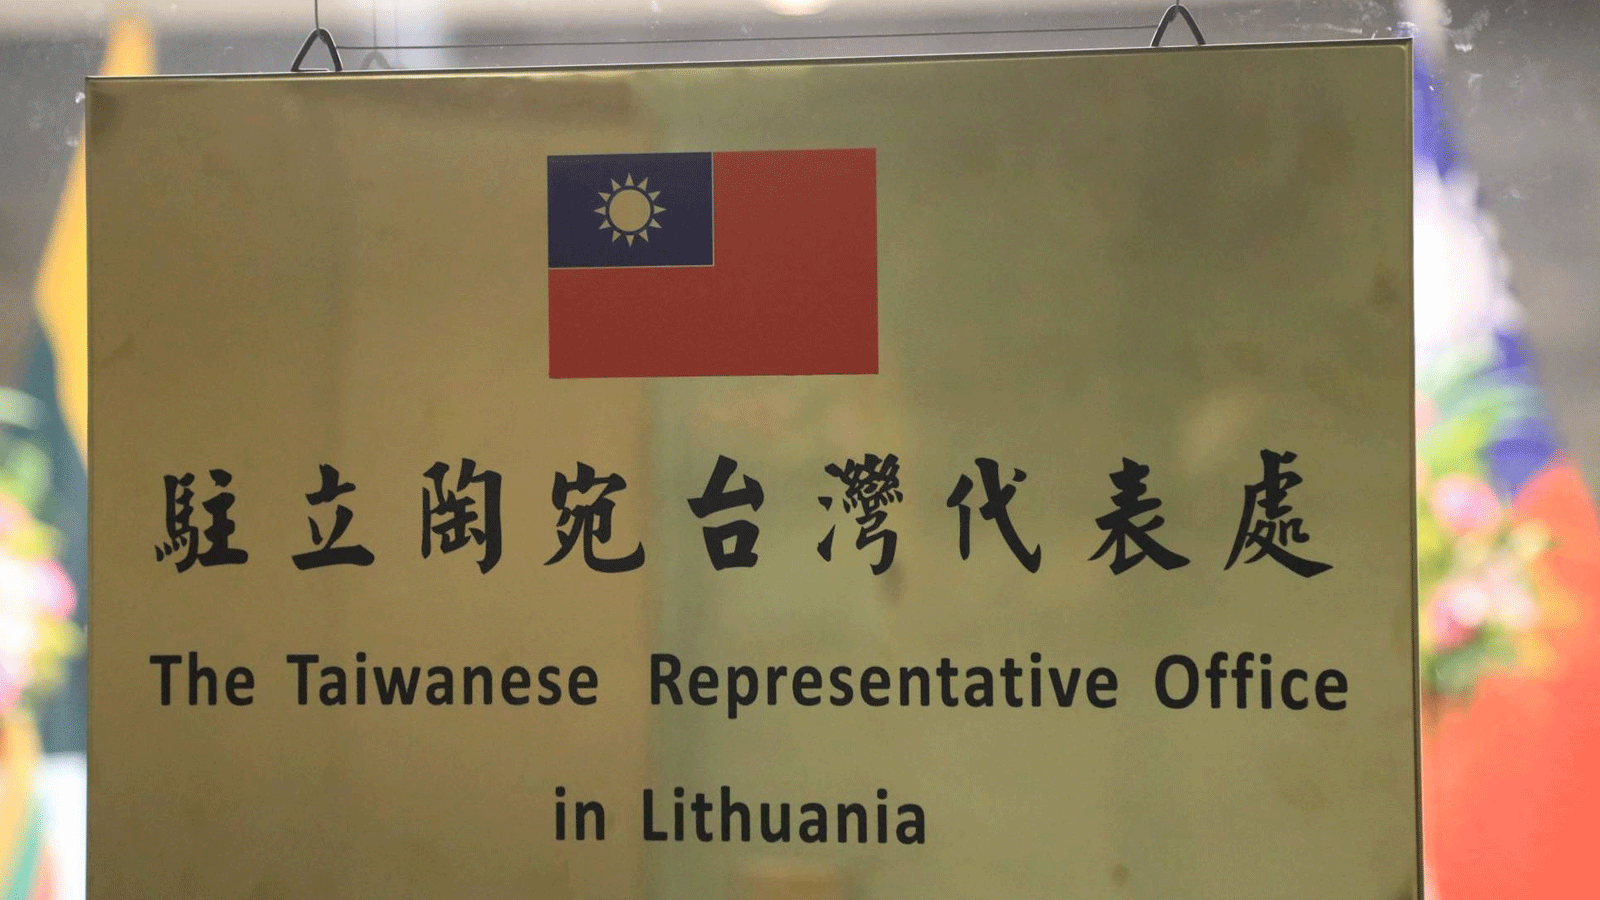 تايبيه تفتح مكتبًا رسميًا في ليتوانيا باستخدام اسم تايوان